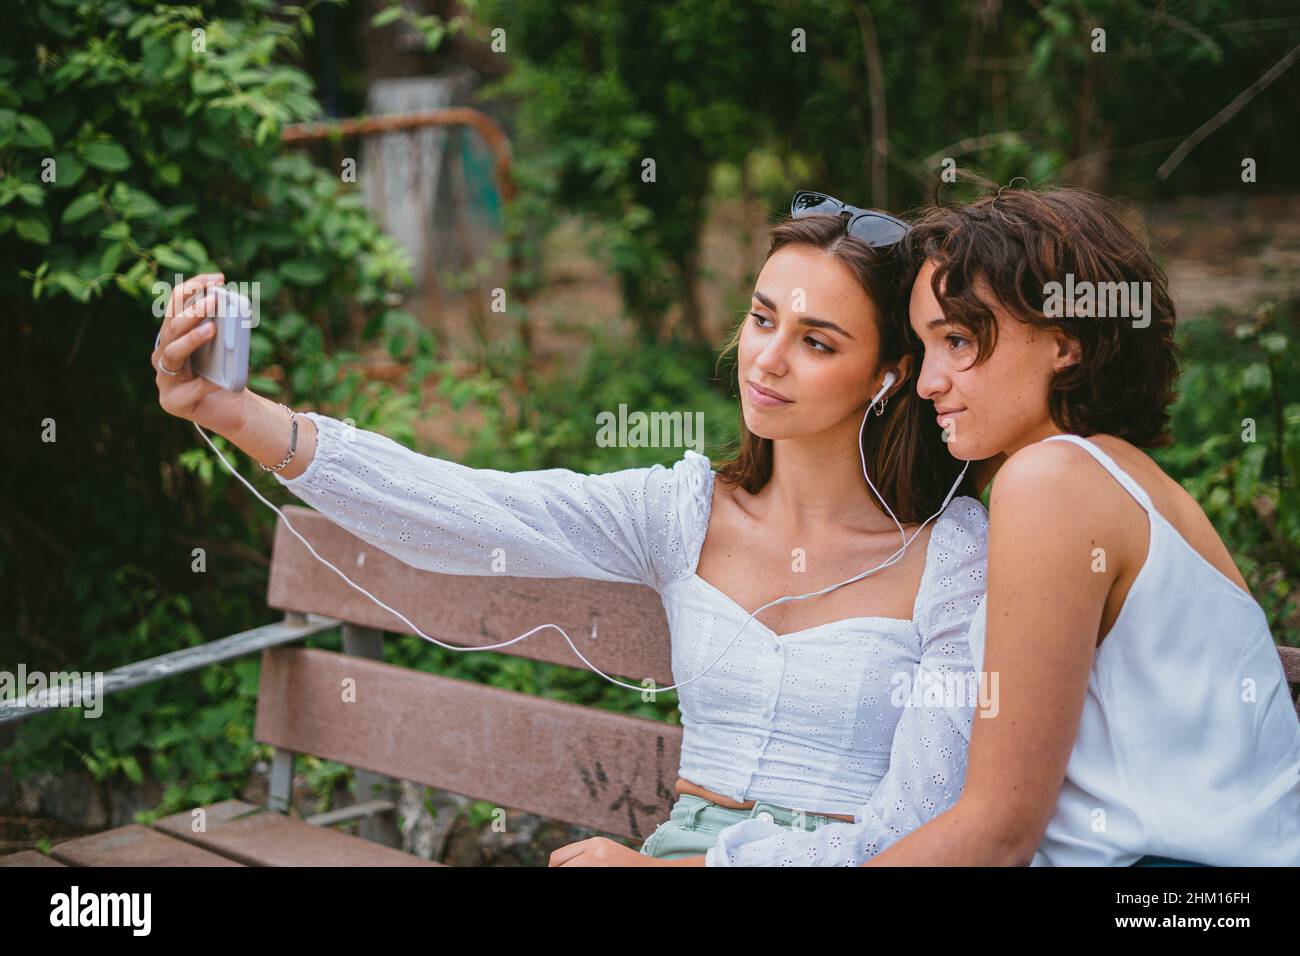 Zwei Mädchen im Teenageralter machen ein Selfie, während sie auf einer Bank in einem Park sitzen. Stockfoto